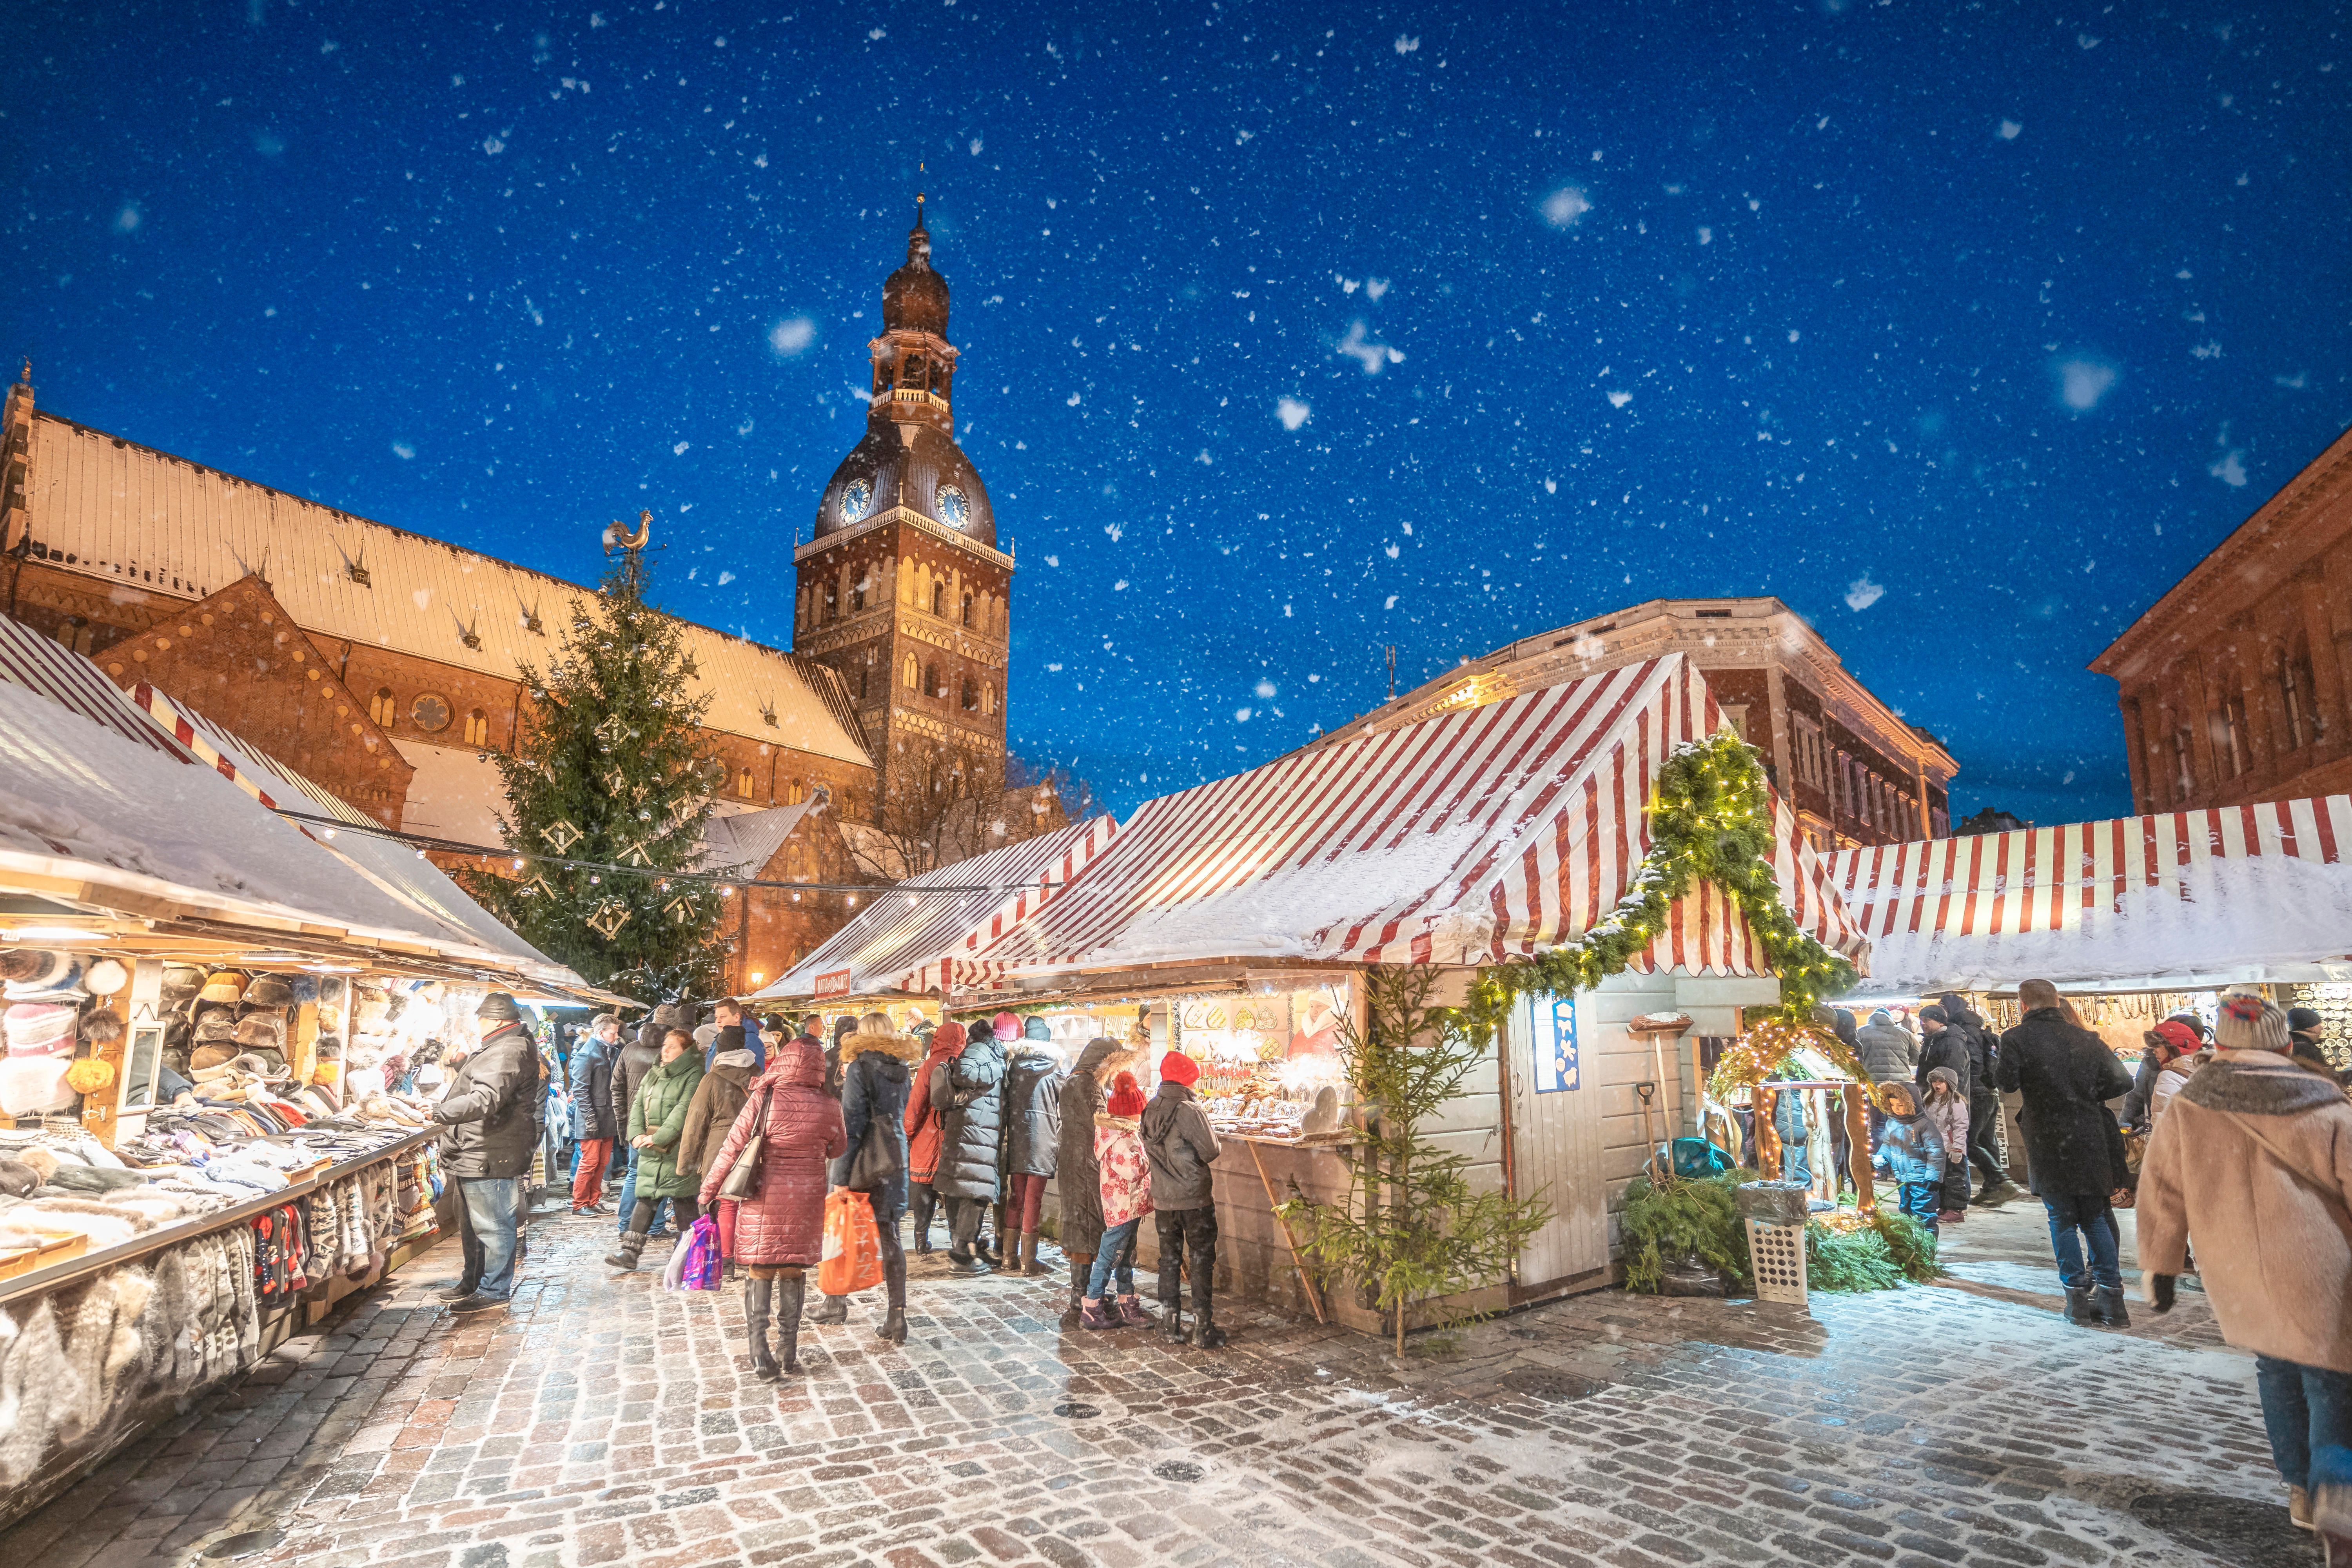 Platz 4: Auf den vierten Platz wurde der Weihnachtsmarkt in Riga, Lettland gewählt. Er gilt als einer der authentischsten Weihnachtsmärkte in Europa.